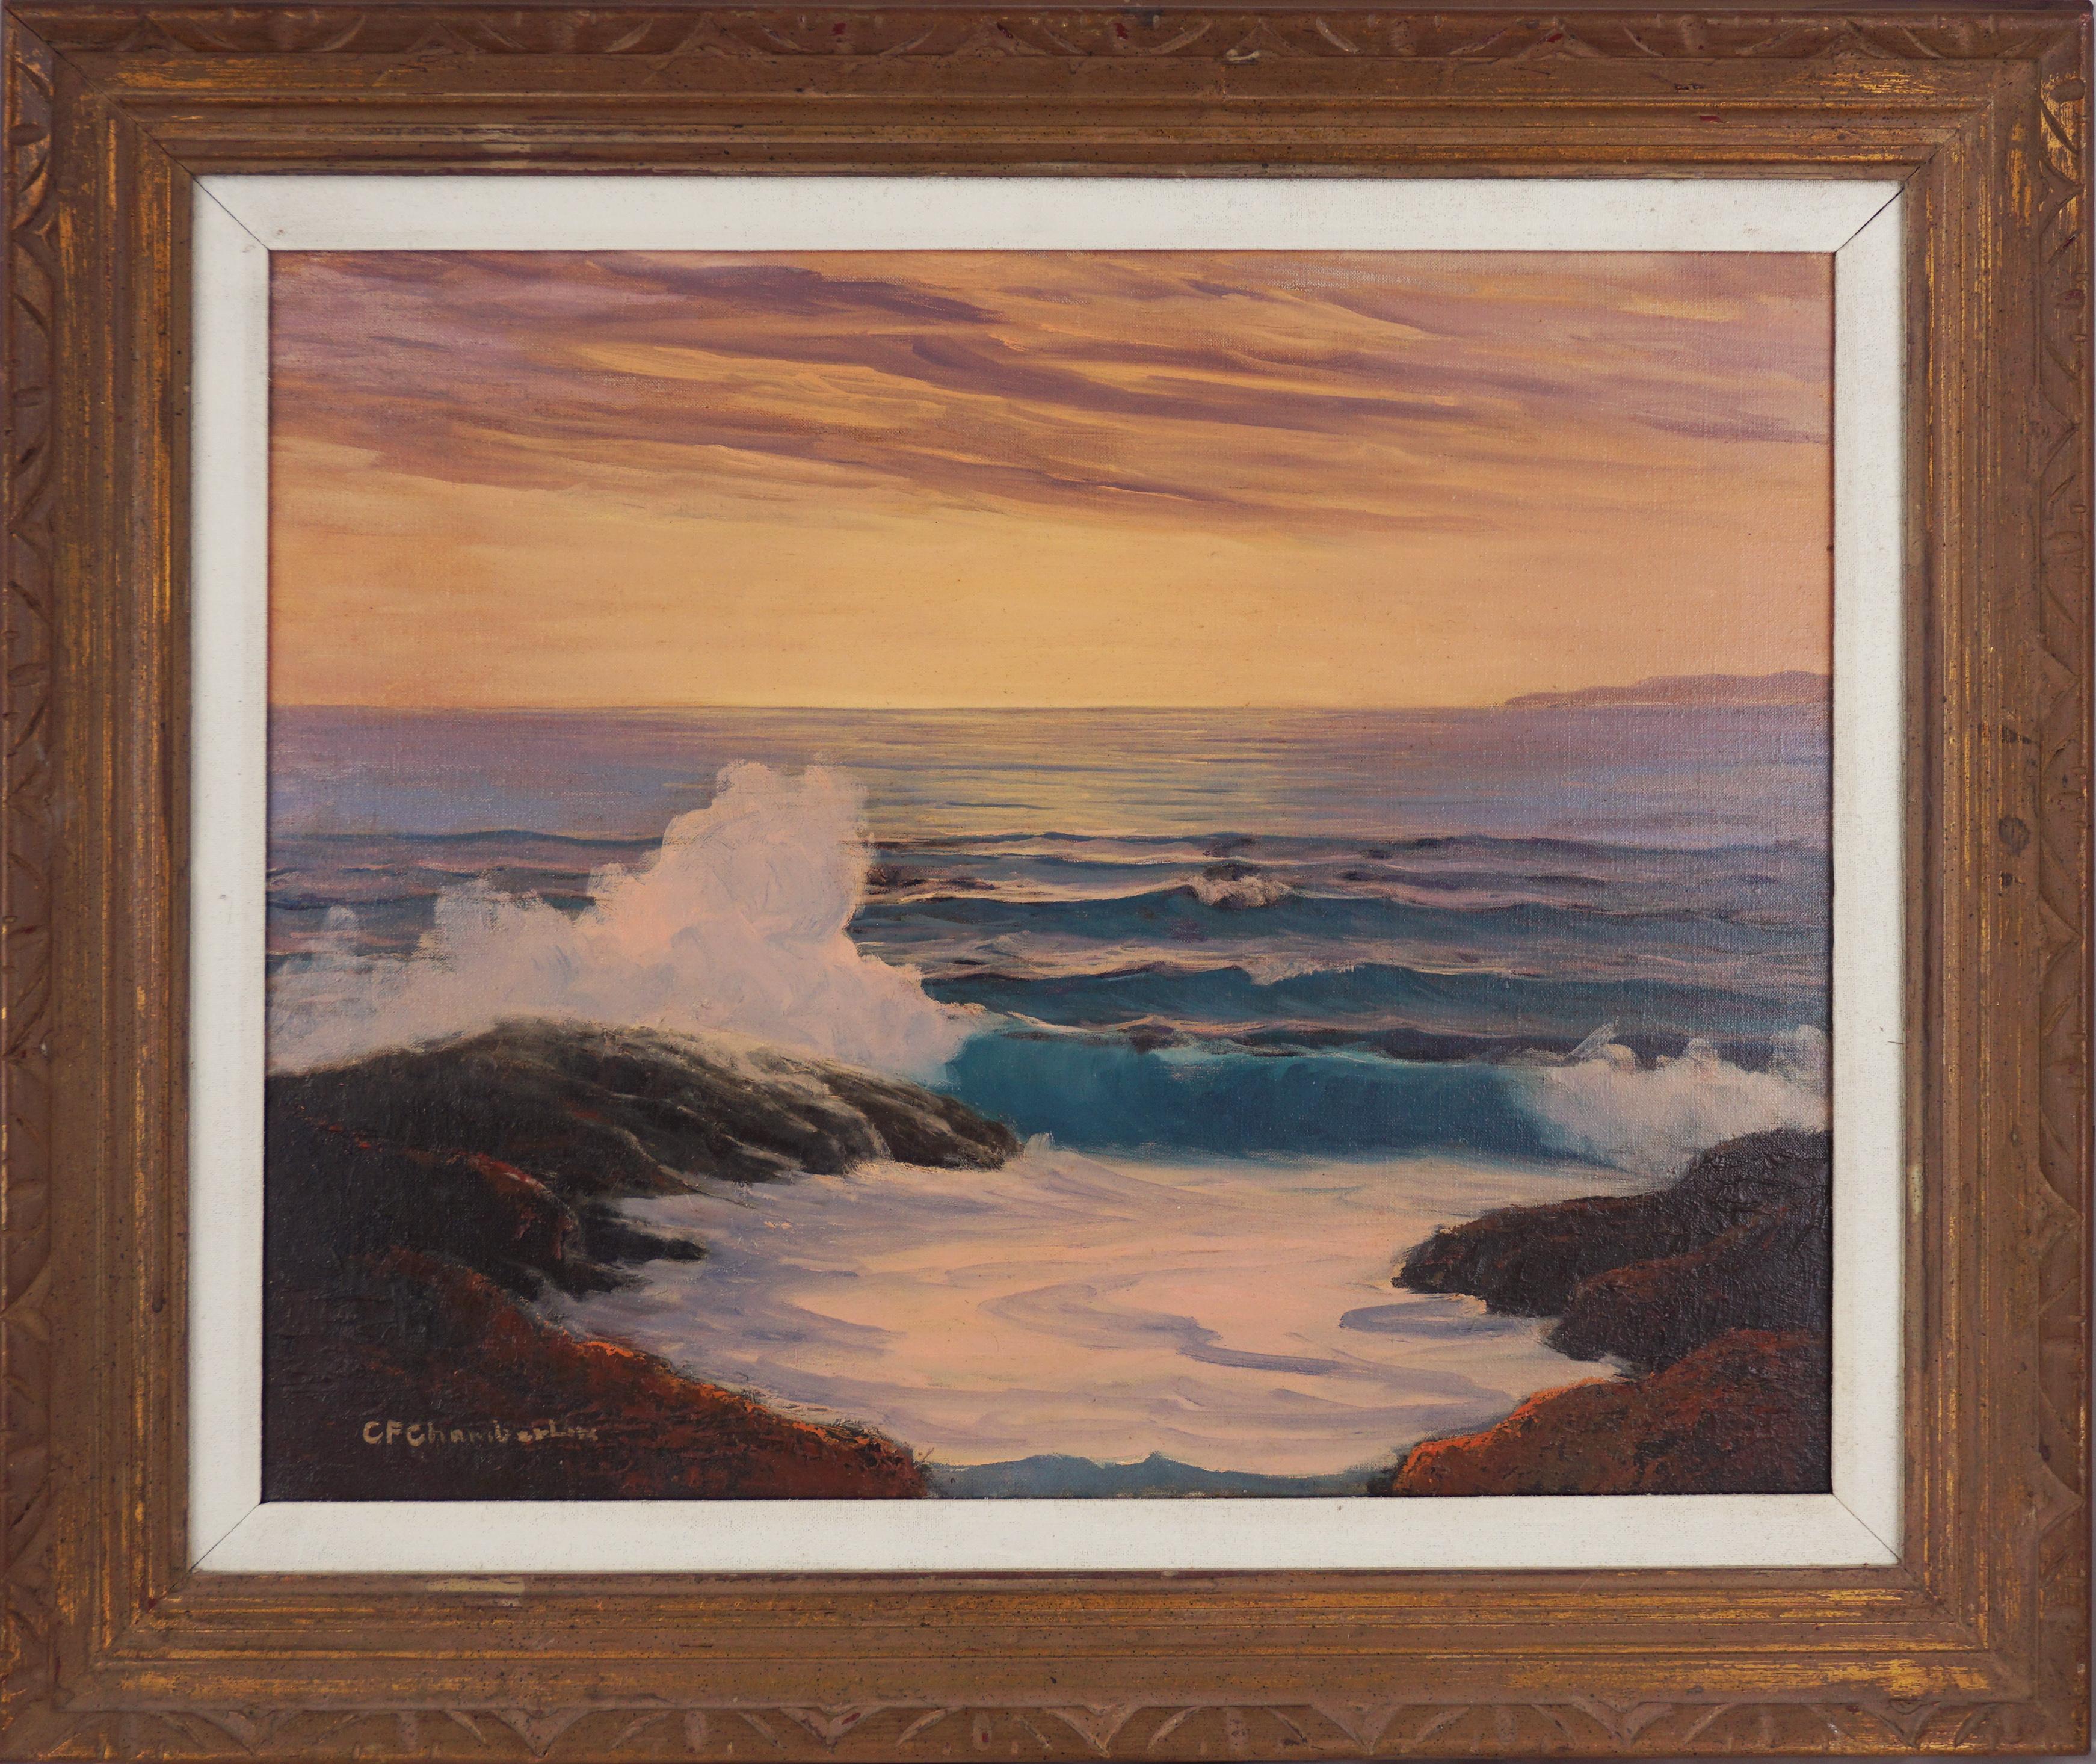 Landscape Painting Cecil F. Chamberlin - Paysage marin du milieu du siècle dernier - bassin de mariage de Manresa au coucher du soleil